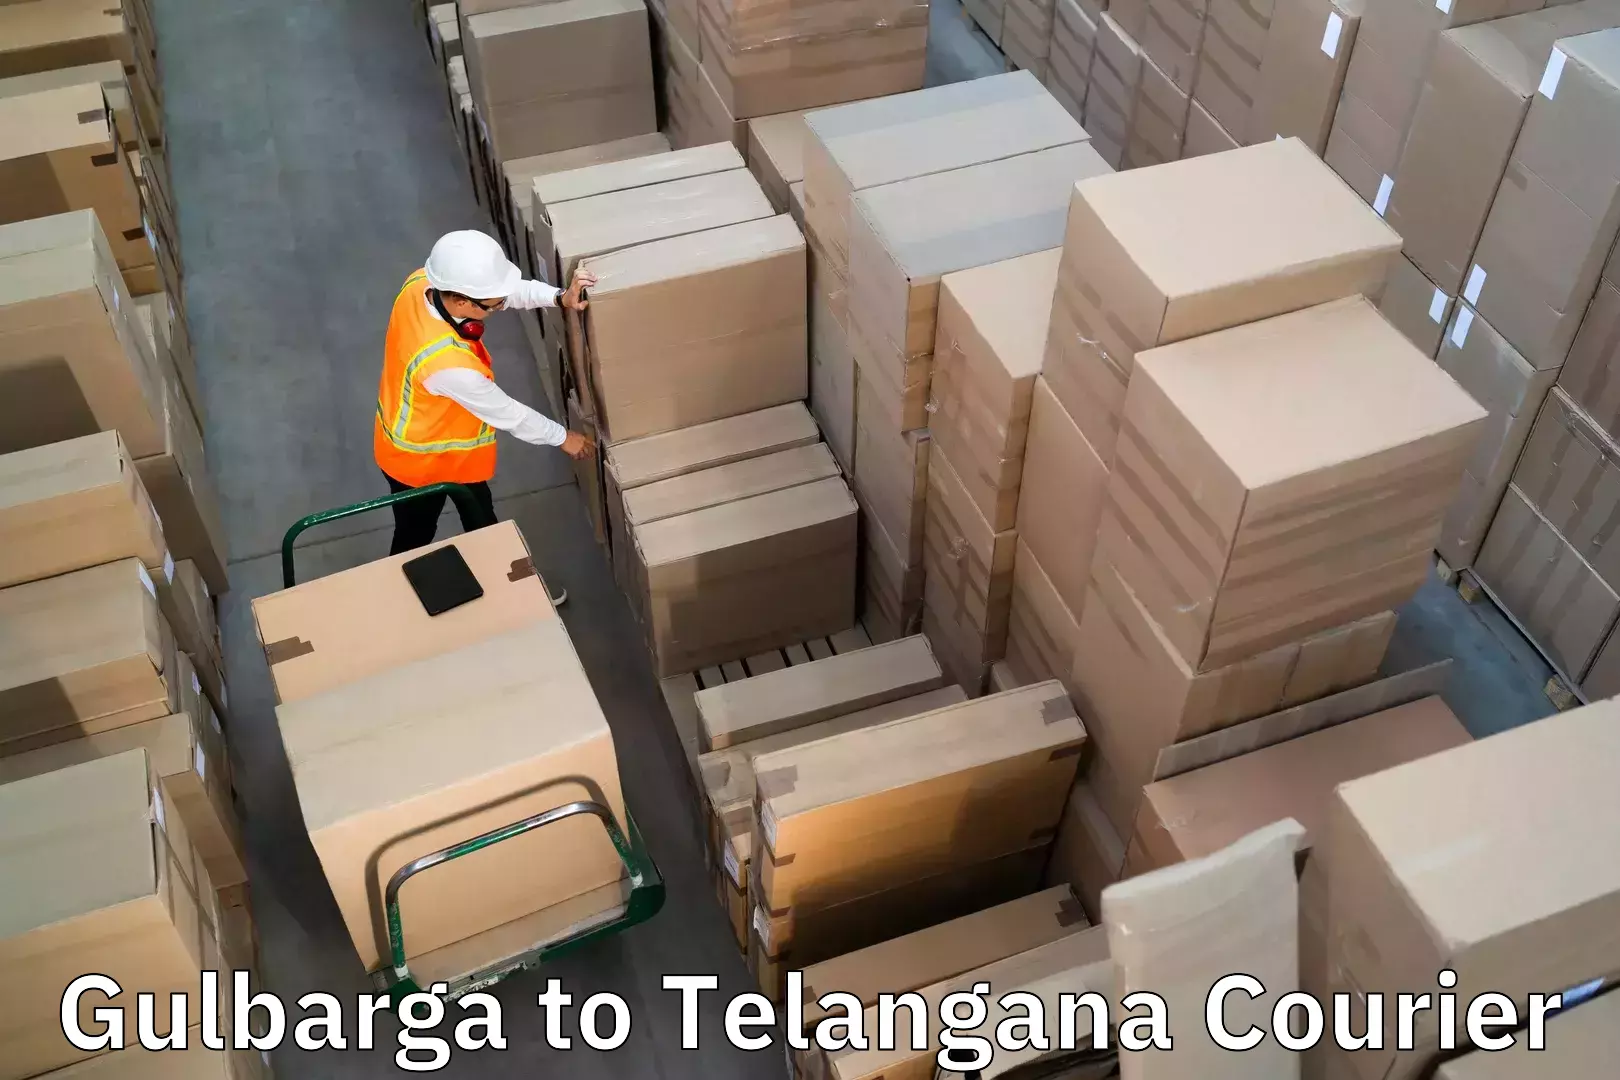 Baggage shipping experts Gulbarga to Kadthal